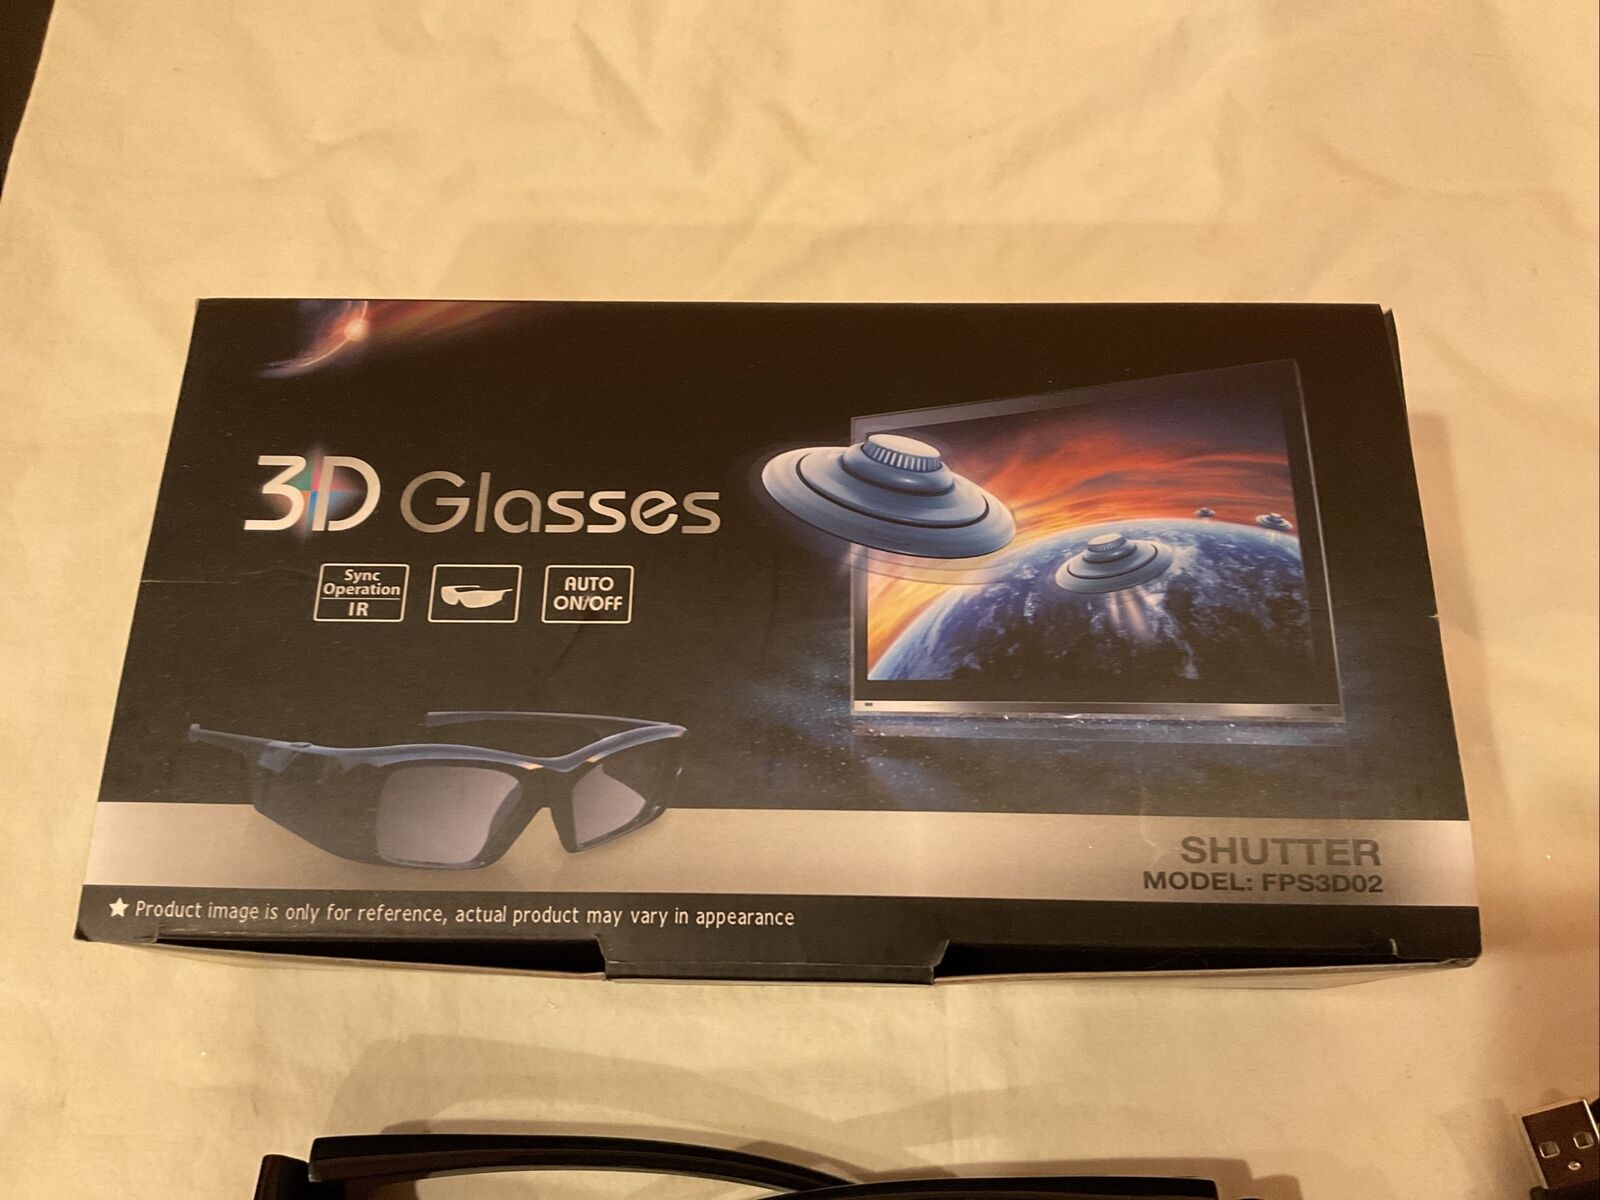 3d Glasses Model Fps3d02 Pair Of Glasses For Tv